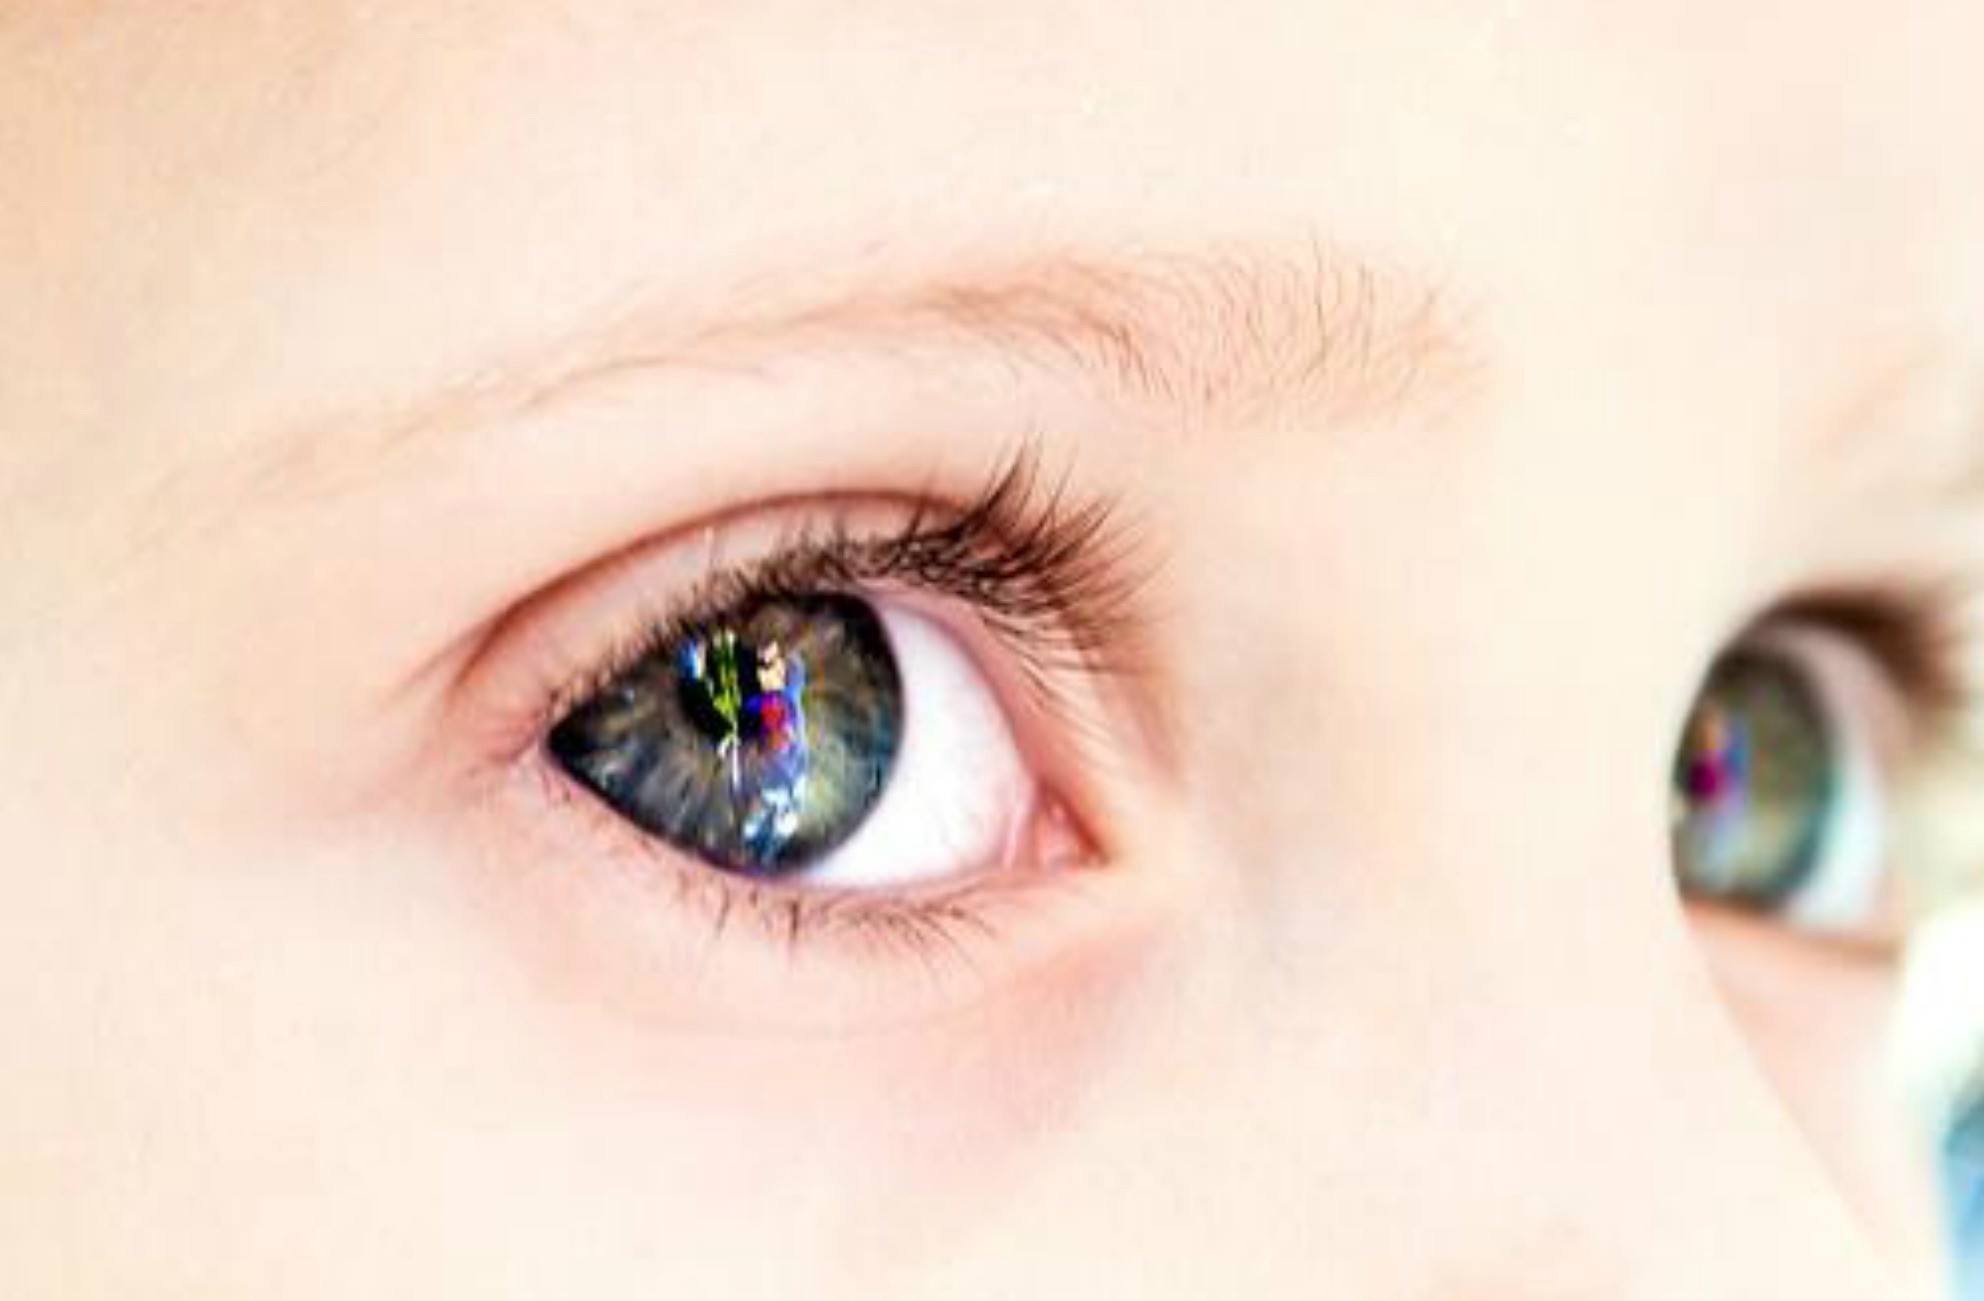 Maladies oculaires fréquentes chez les enfants